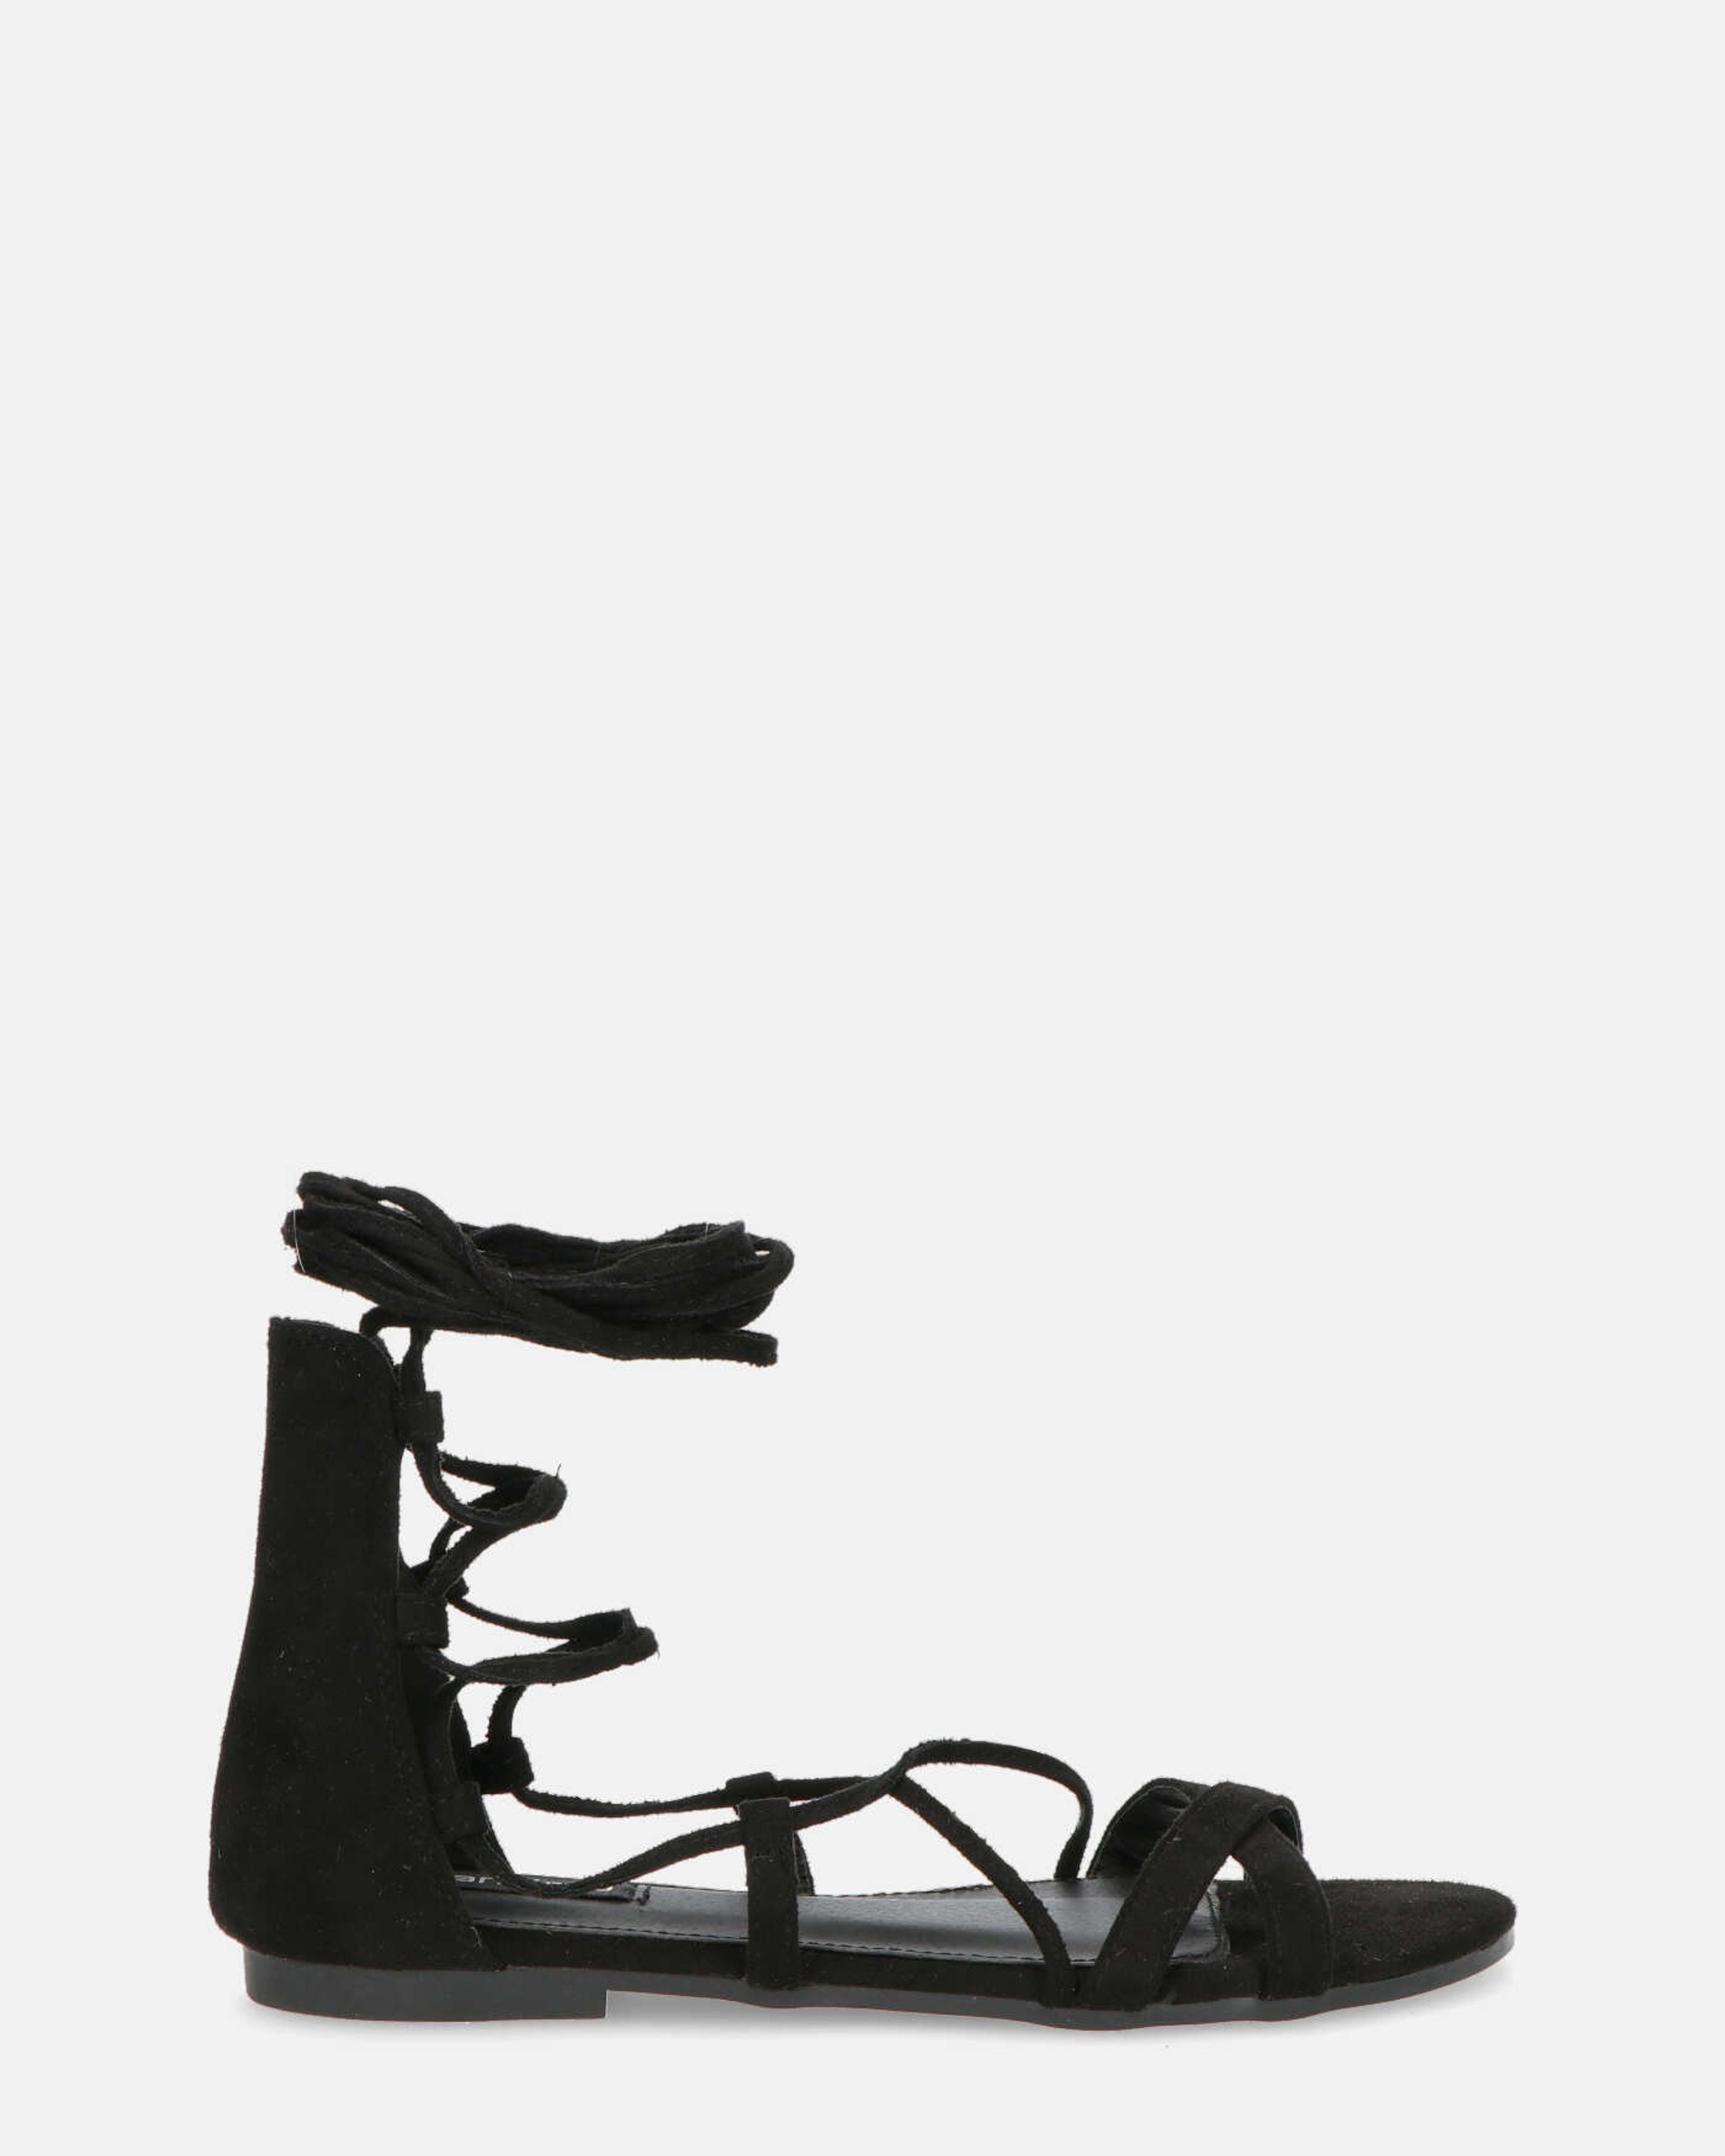 YANNA - sandales plates à lacets noires en daim